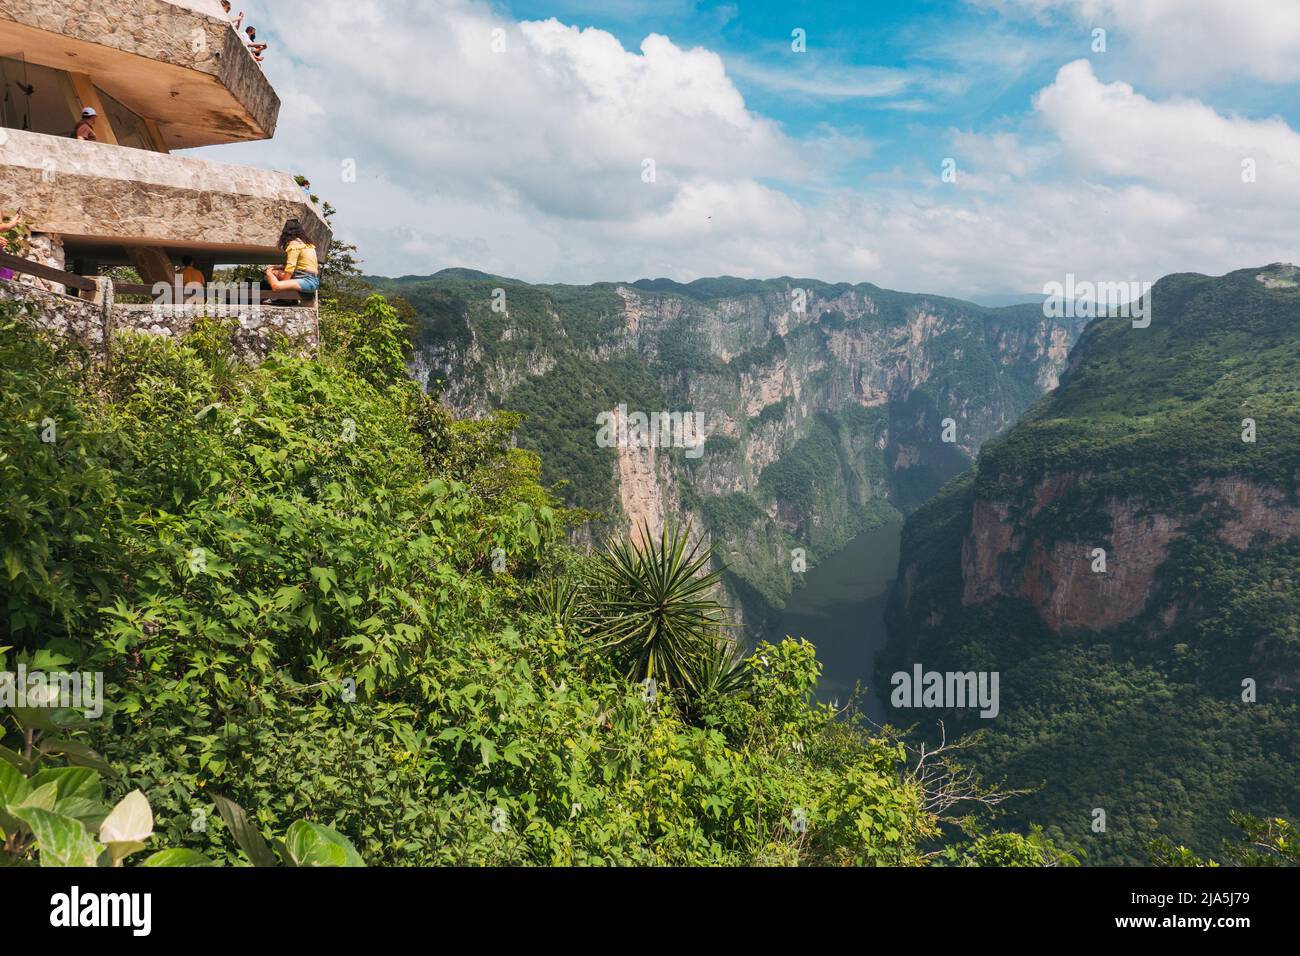 Mirando hacia el Cañón del Sumidero, Chiapas, México, desde el centro de visitantes. El cañón es popular tanto para turistas nacionales como extranjeros Foto de stock